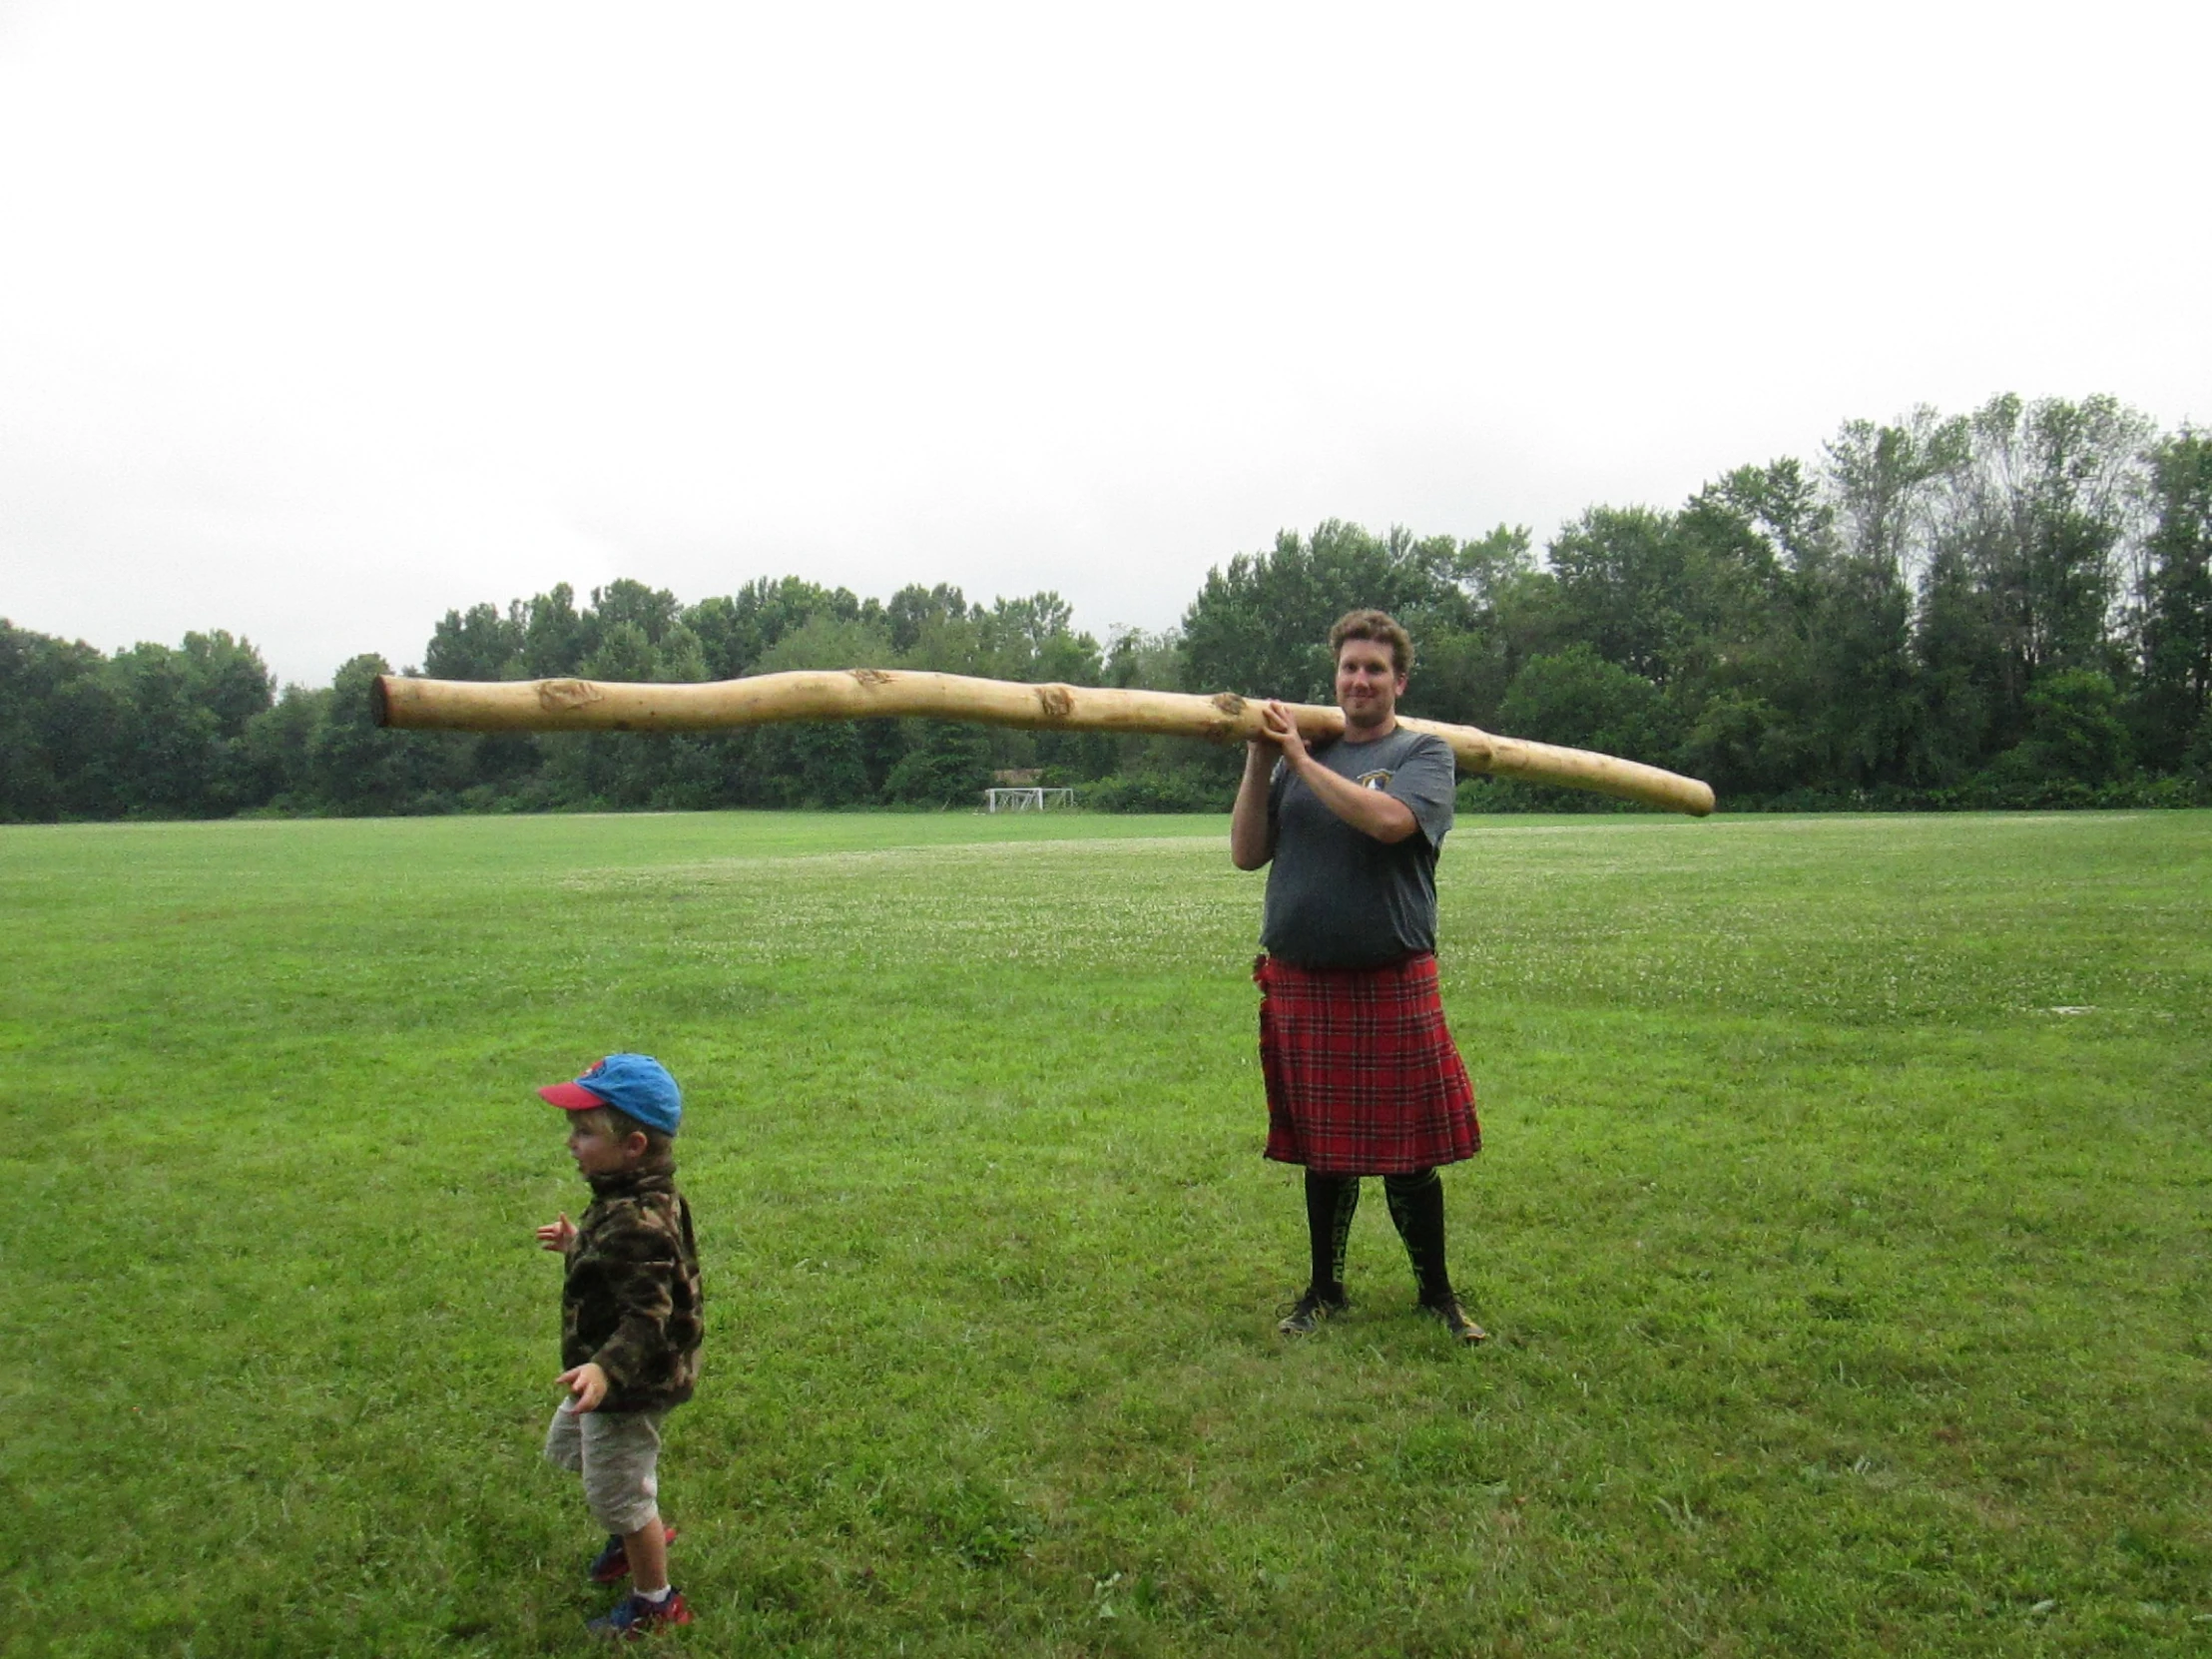 a man standing next to a small boy holding a baseball bat